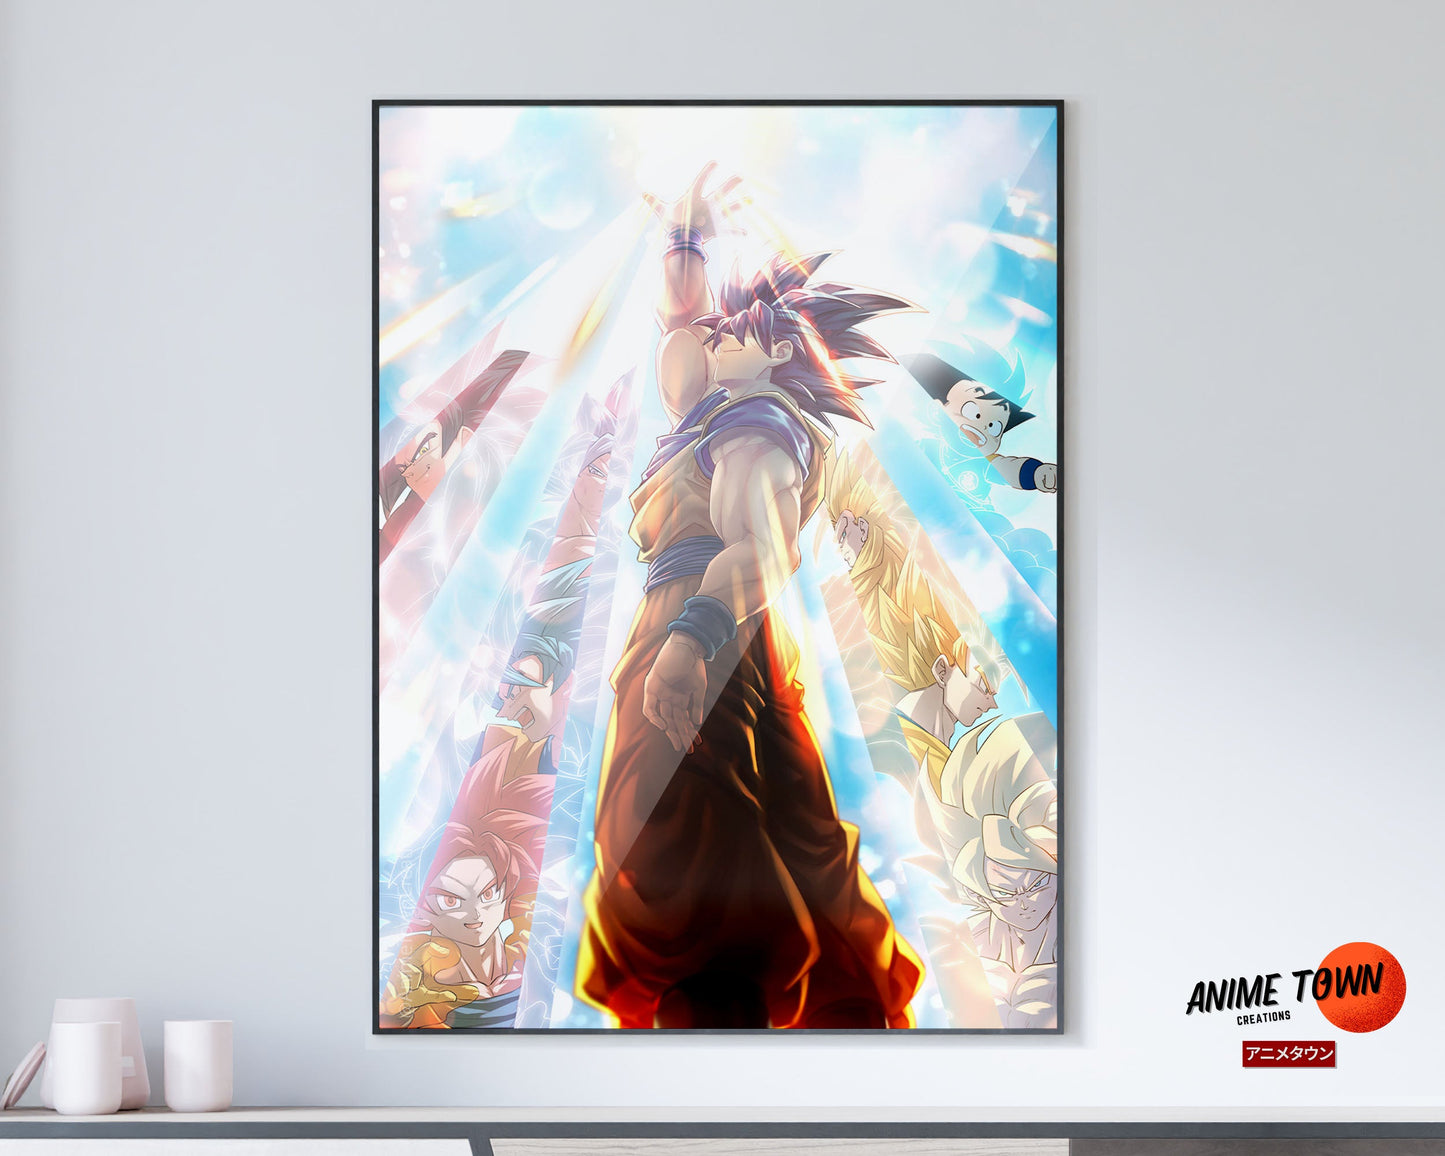 Anime Town Creations Poster Dragon Ball Super Saiyan Light 5" x 7" Home Goods - Anime Dragon Ball Poster